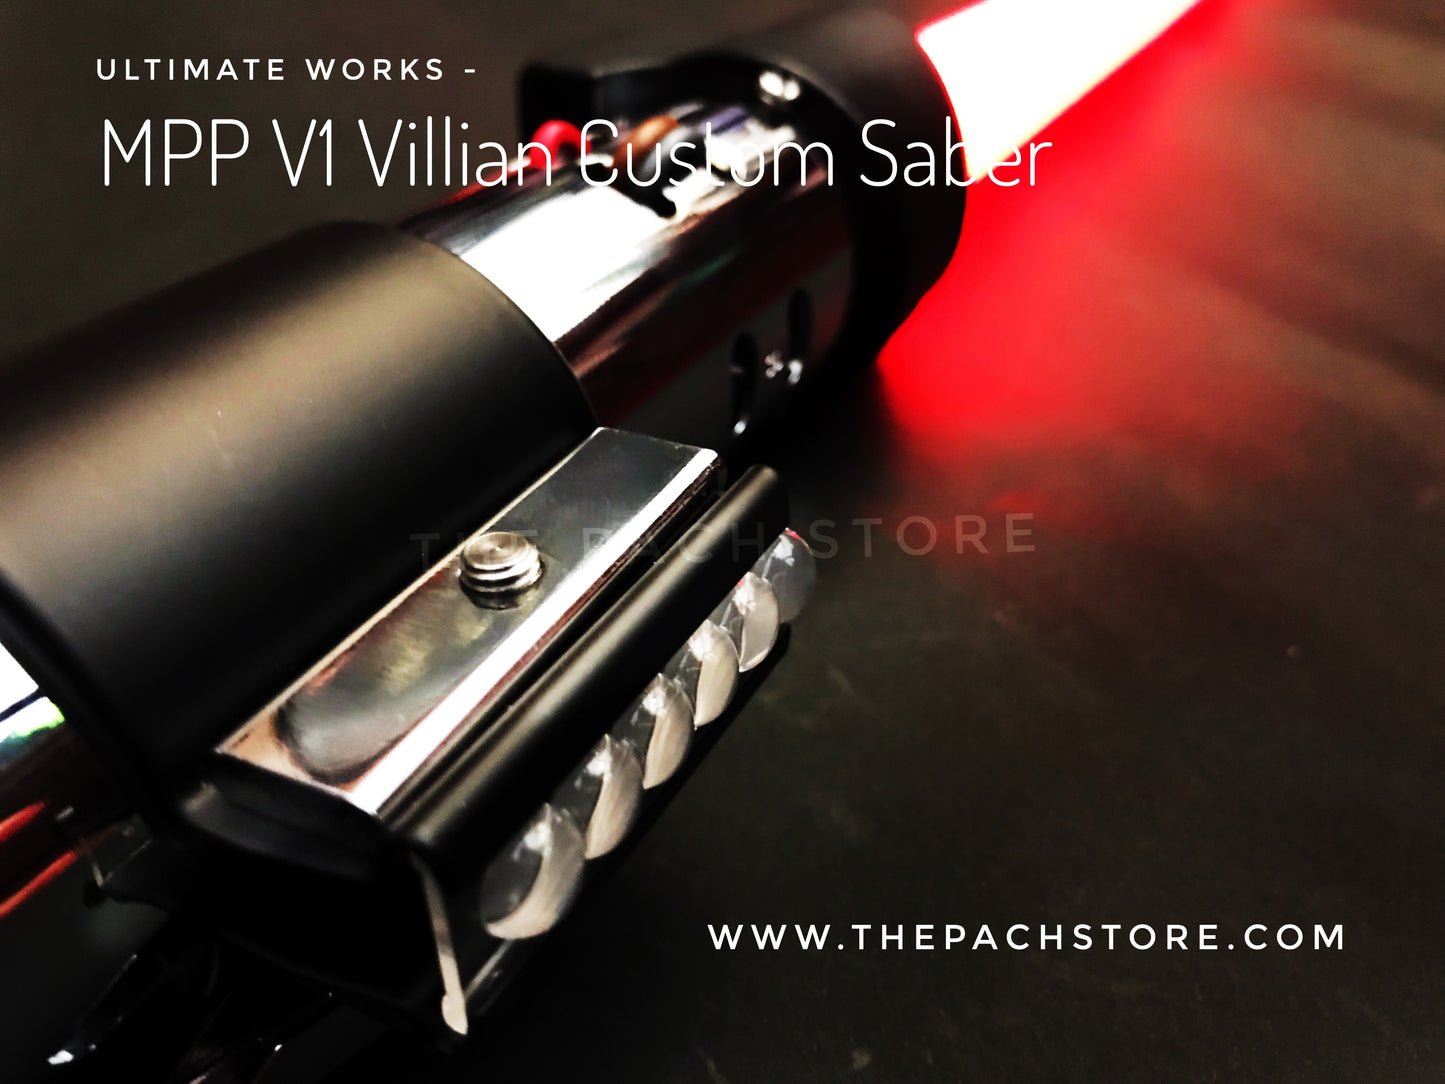 Ultimate Works - MPP V1 Villian Custom Saber